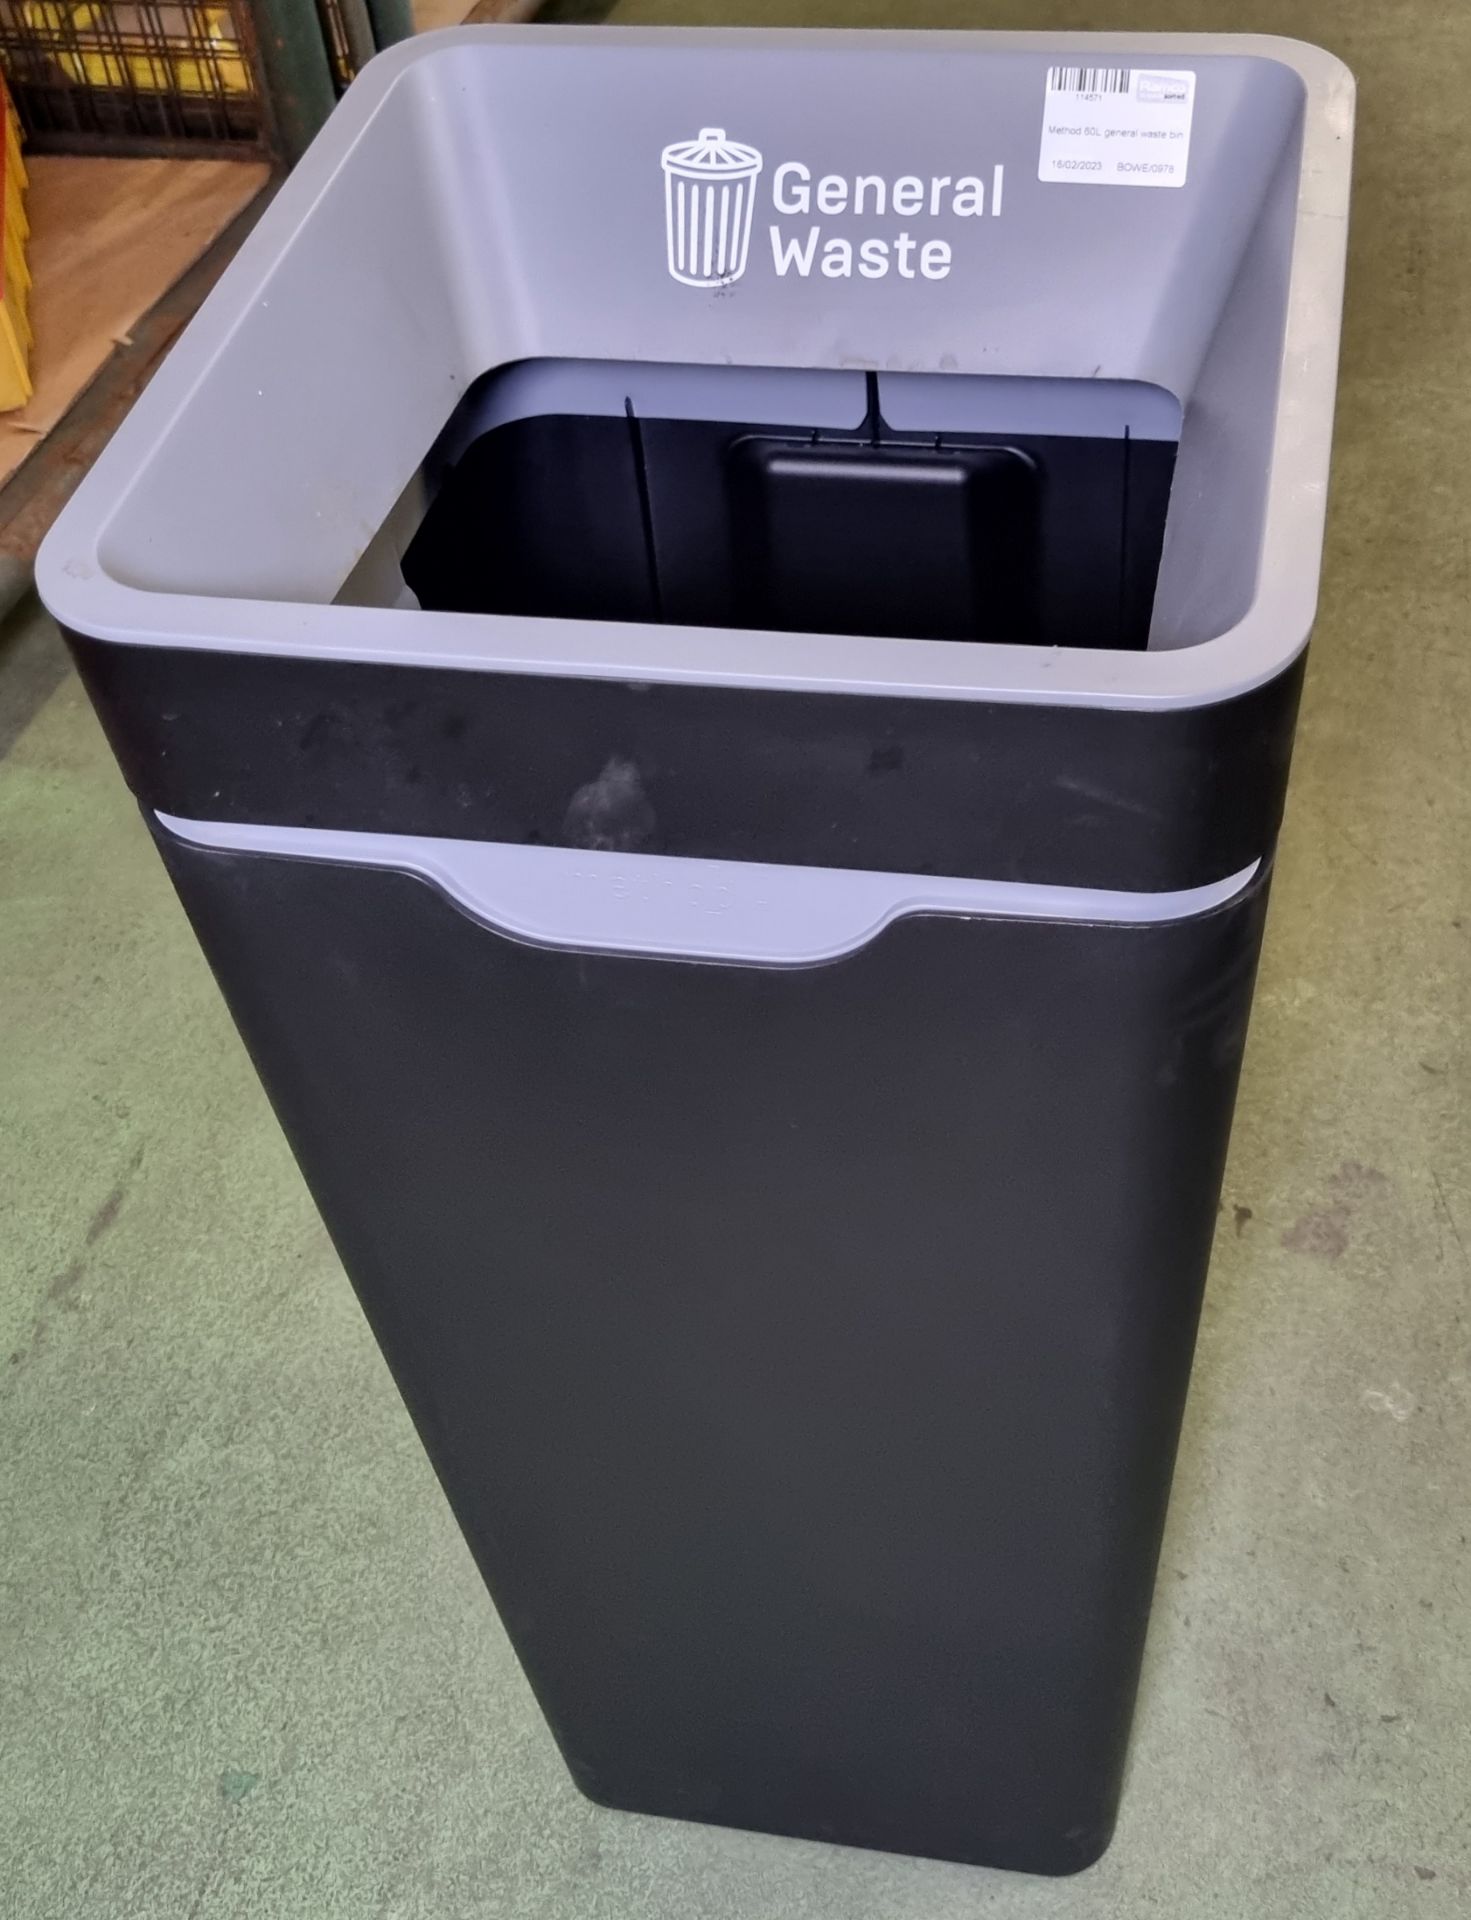 6x Method 60L general waste bins - Image 2 of 3